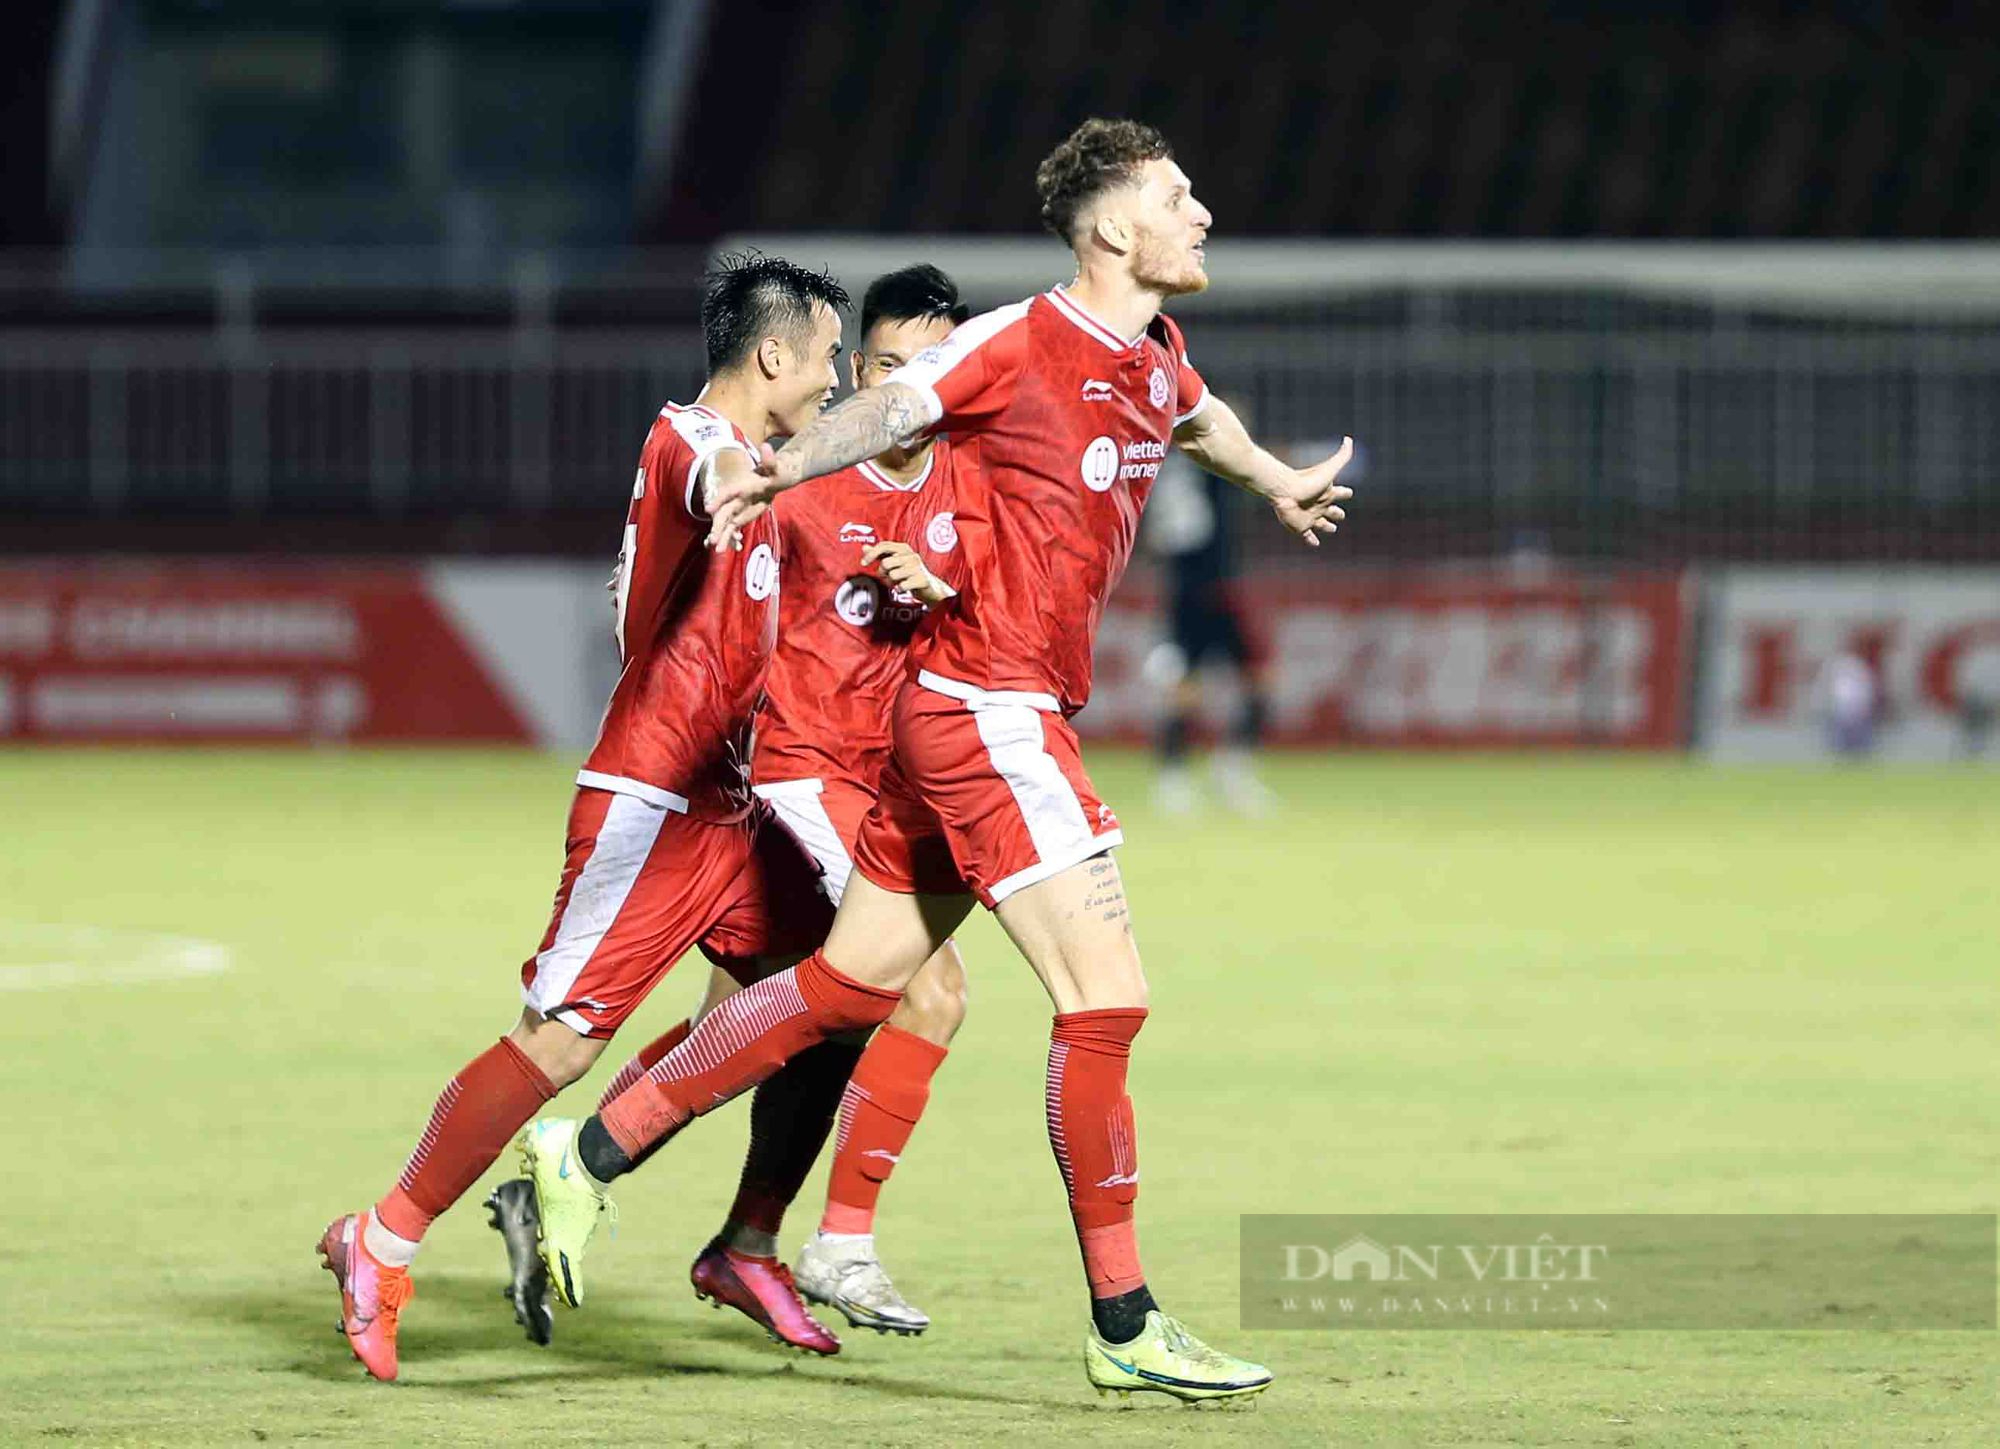 Nhâm Mạnh Dũng kiến tạo, Viettel đánh bại bóng Singapore vượt qua vòng bảng AFC Cup - Ảnh 11.